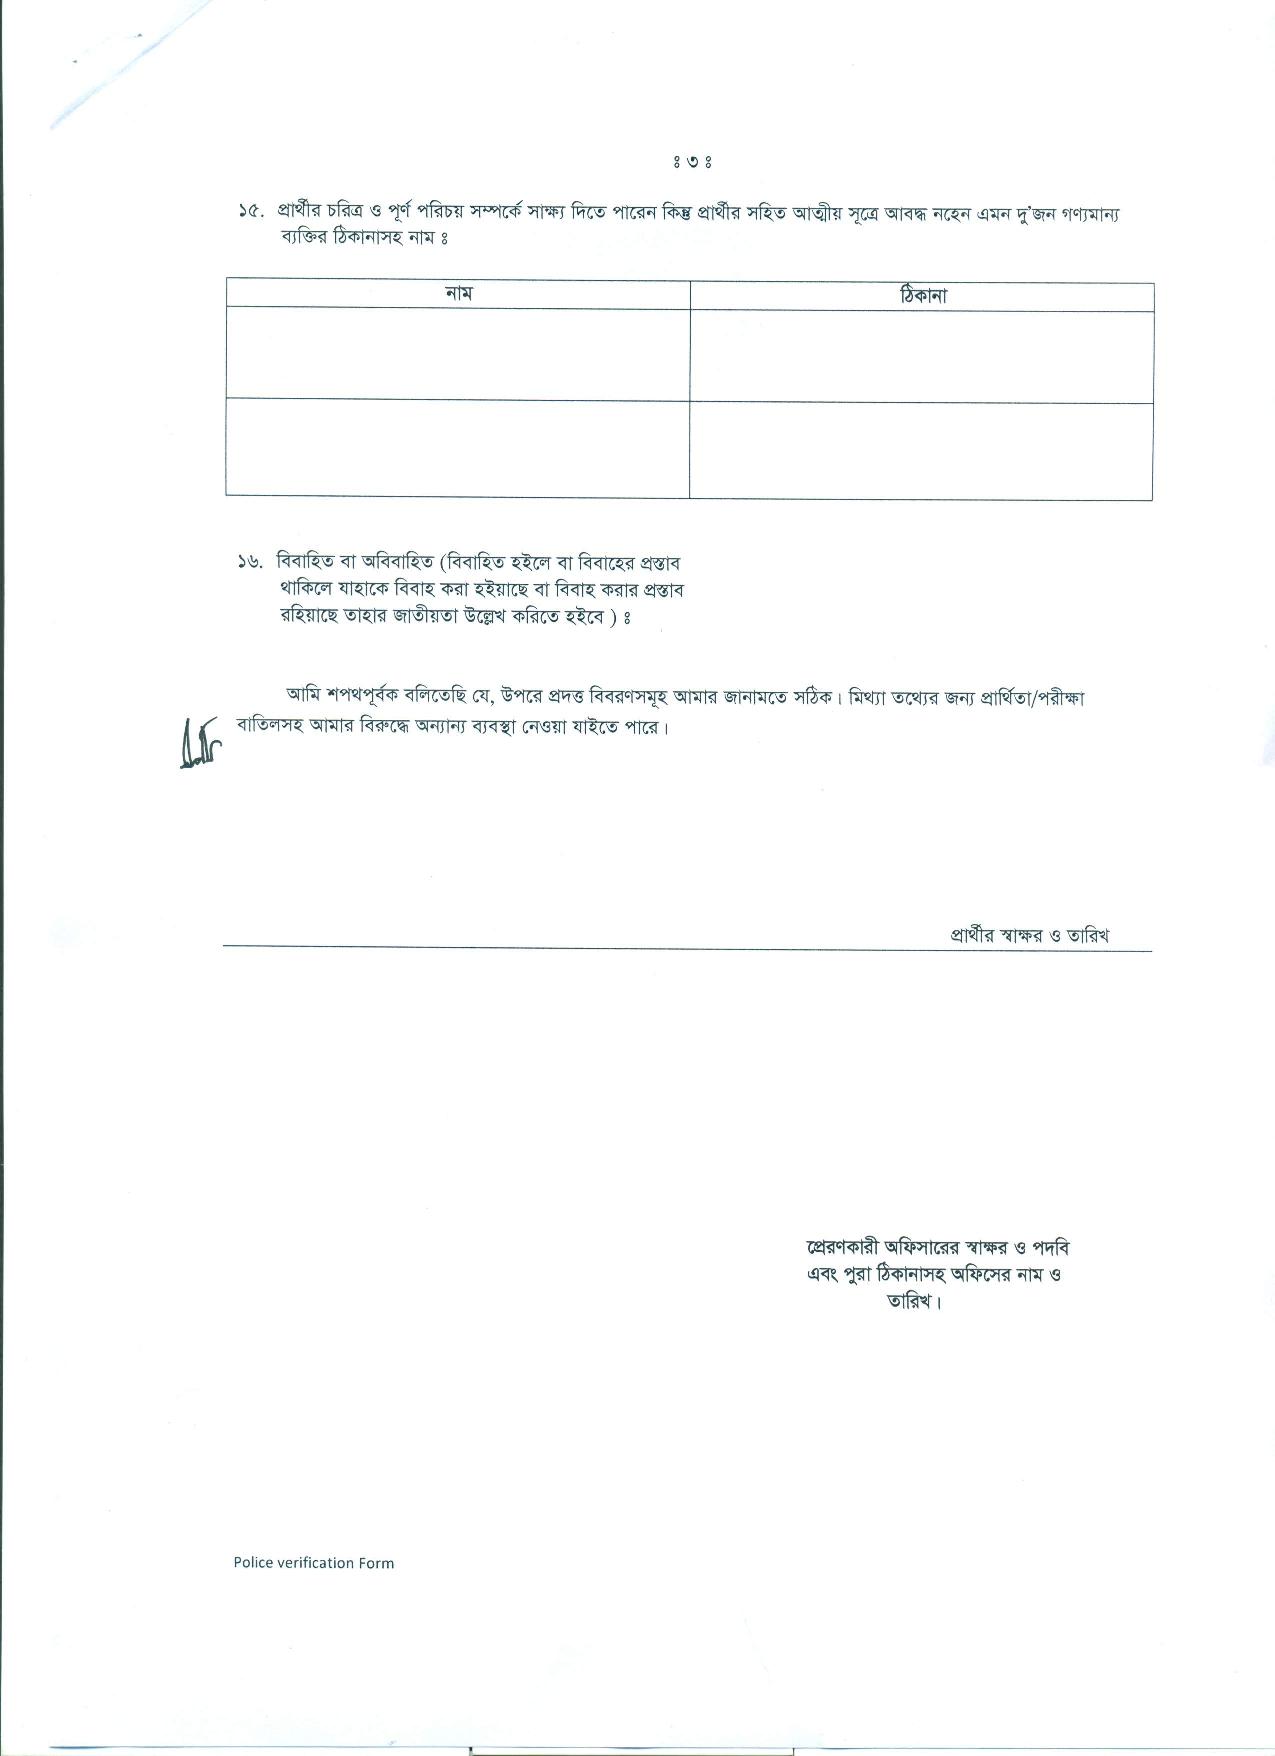 NTRCA Police Verification Form PDF